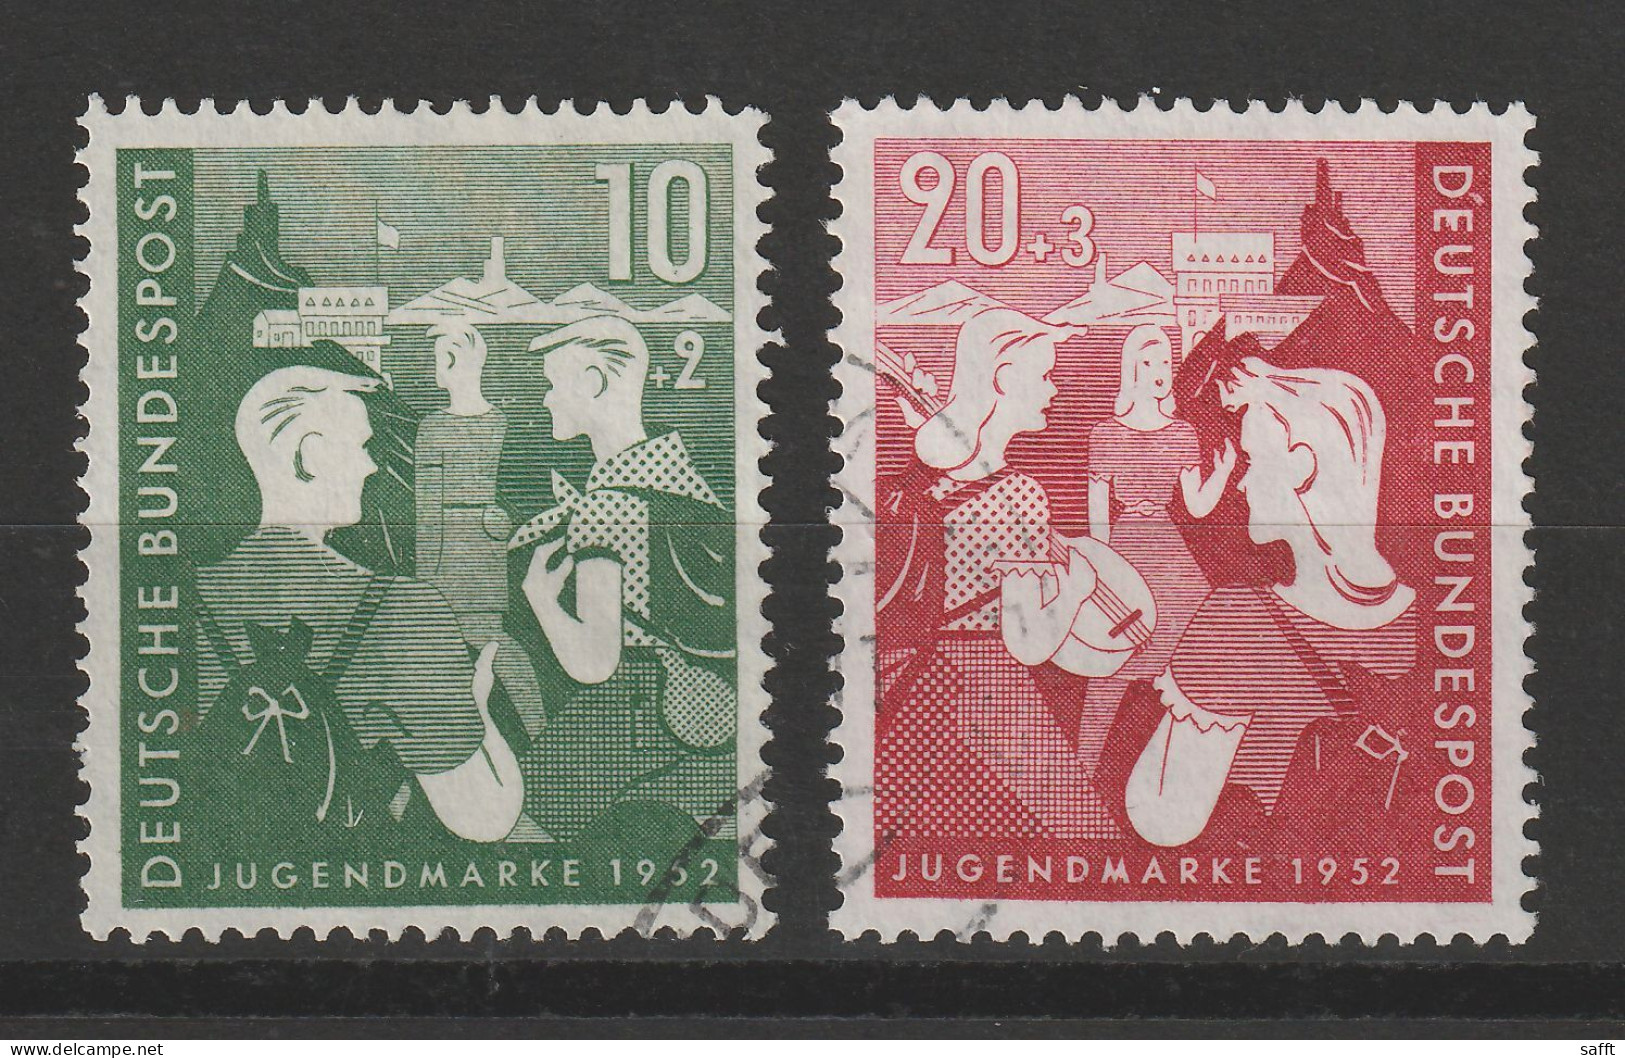 Bund 153/154 Gestempelt - Jugendherberge 1952 - Oblitérés